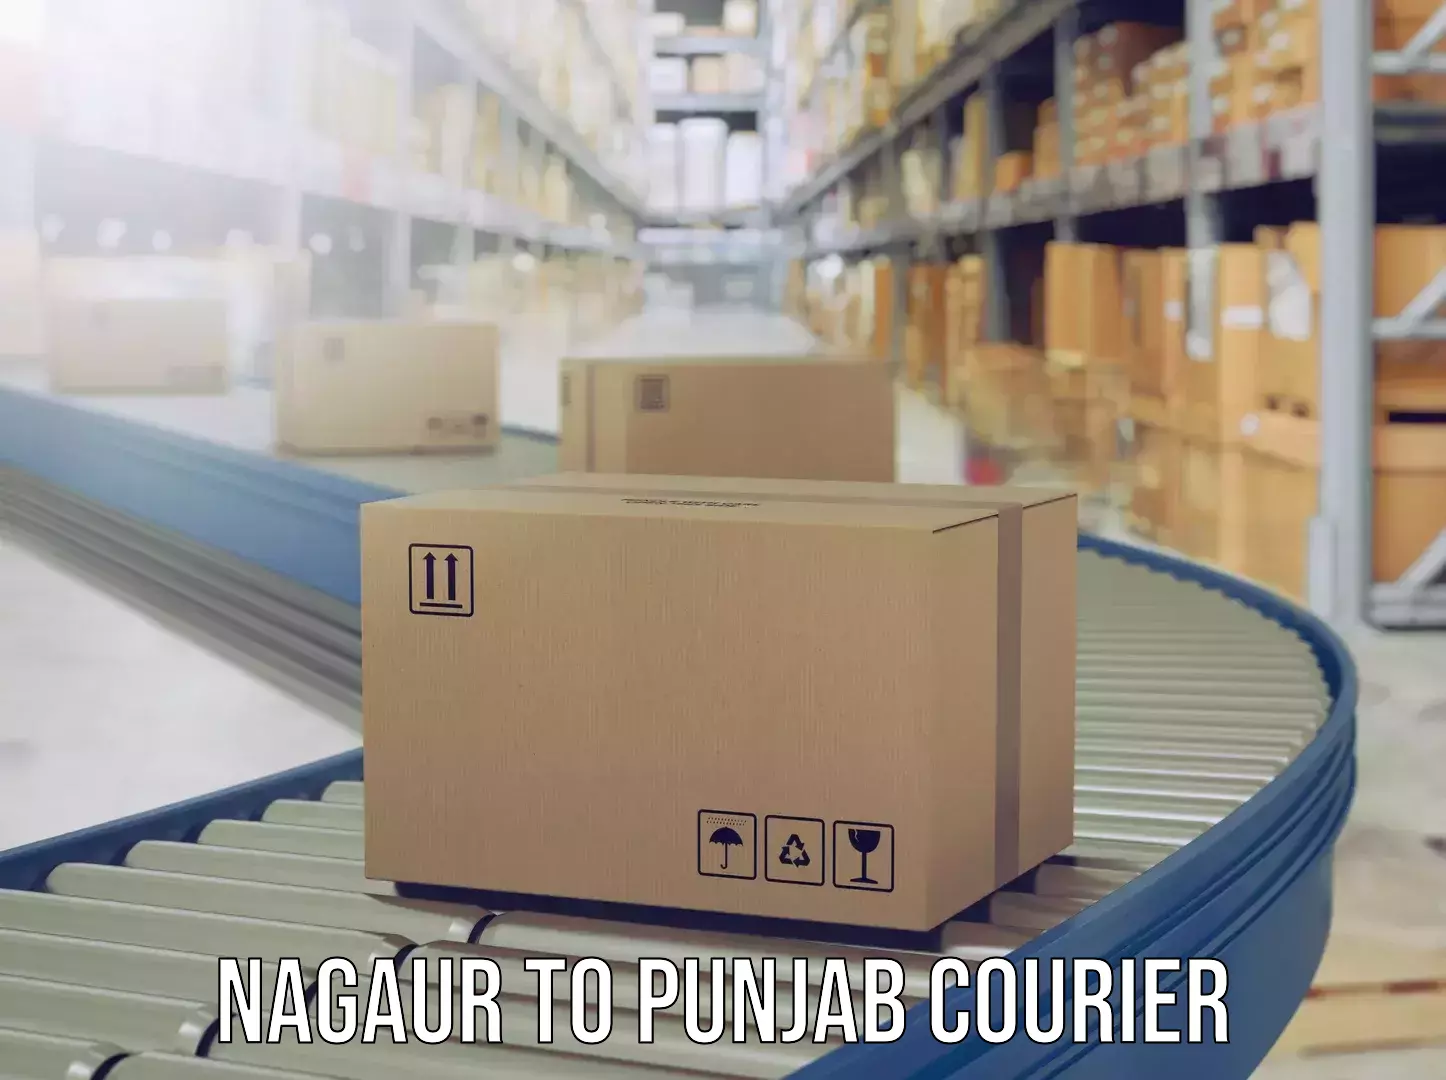 Door-to-door baggage service Nagaur to Punjab